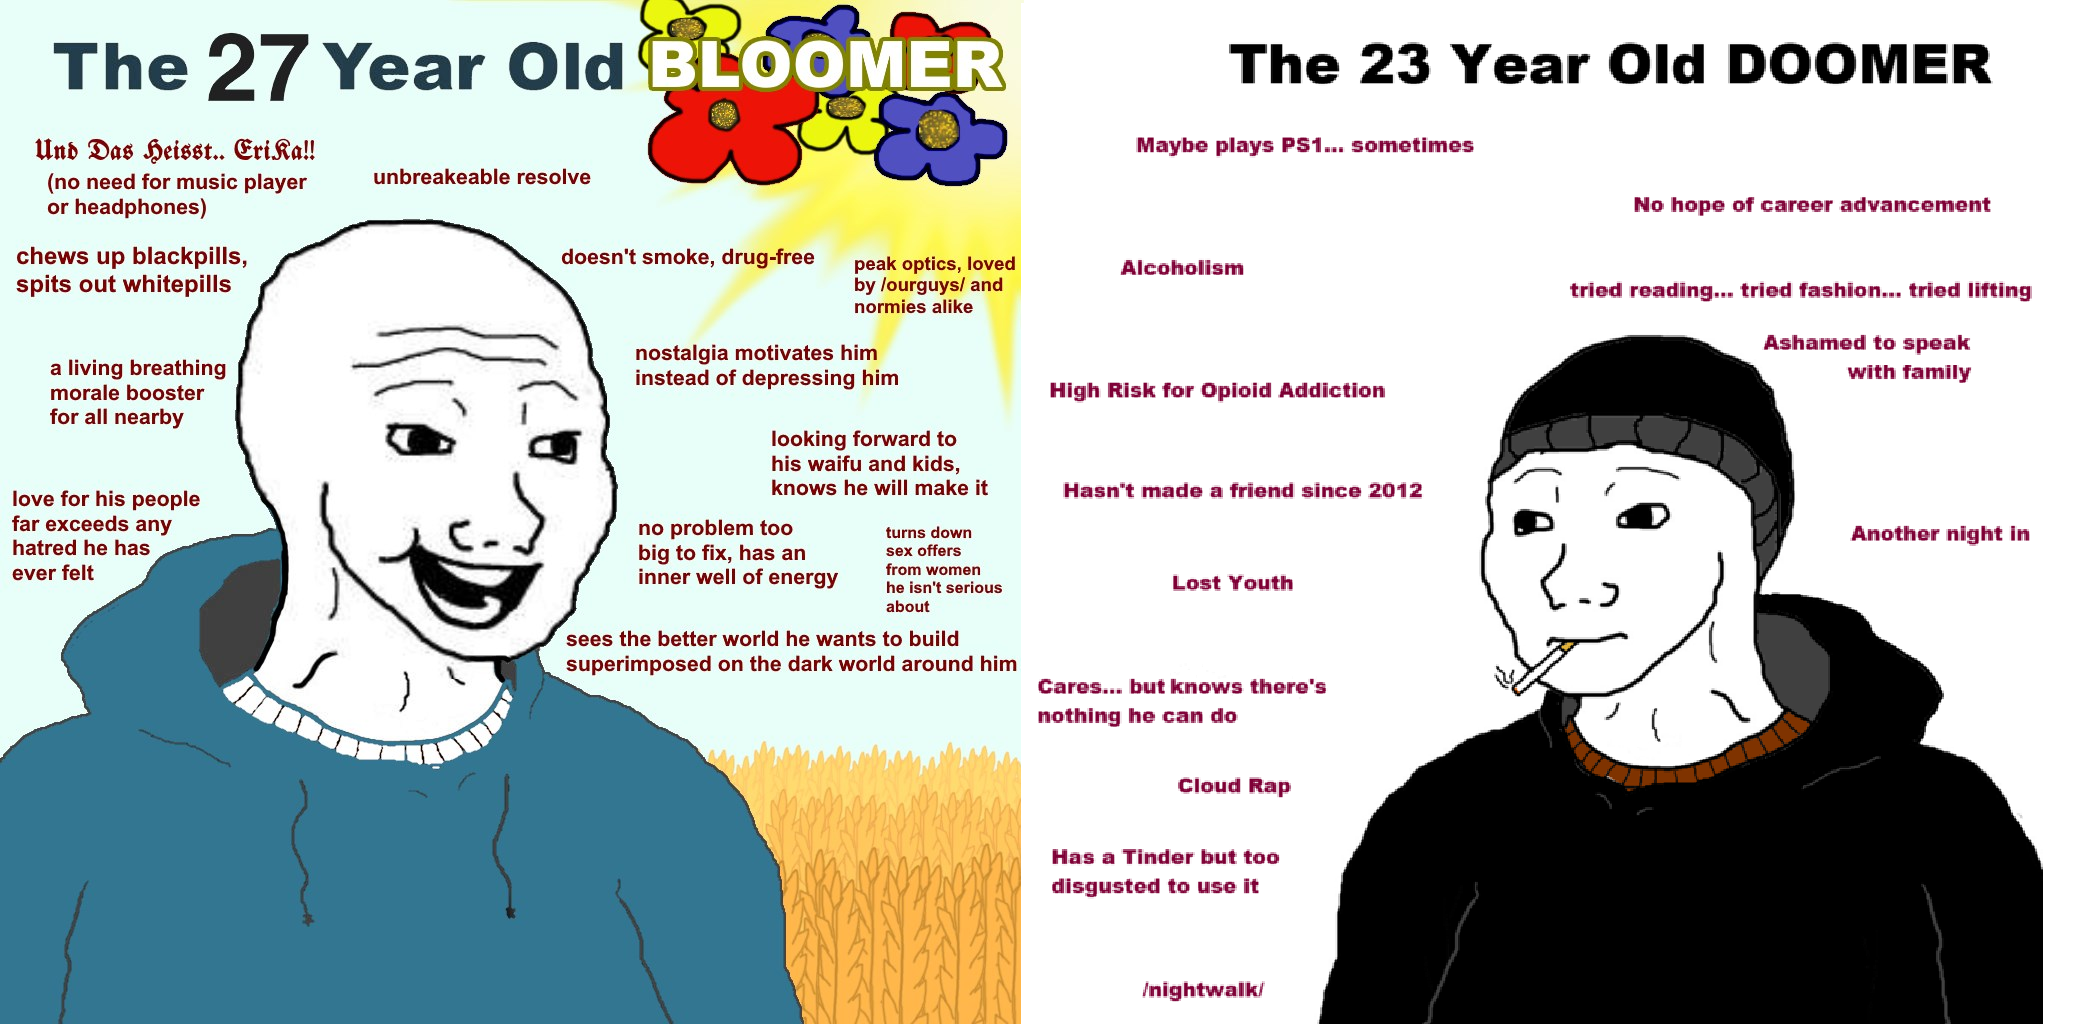 Bloomer ja Doomer